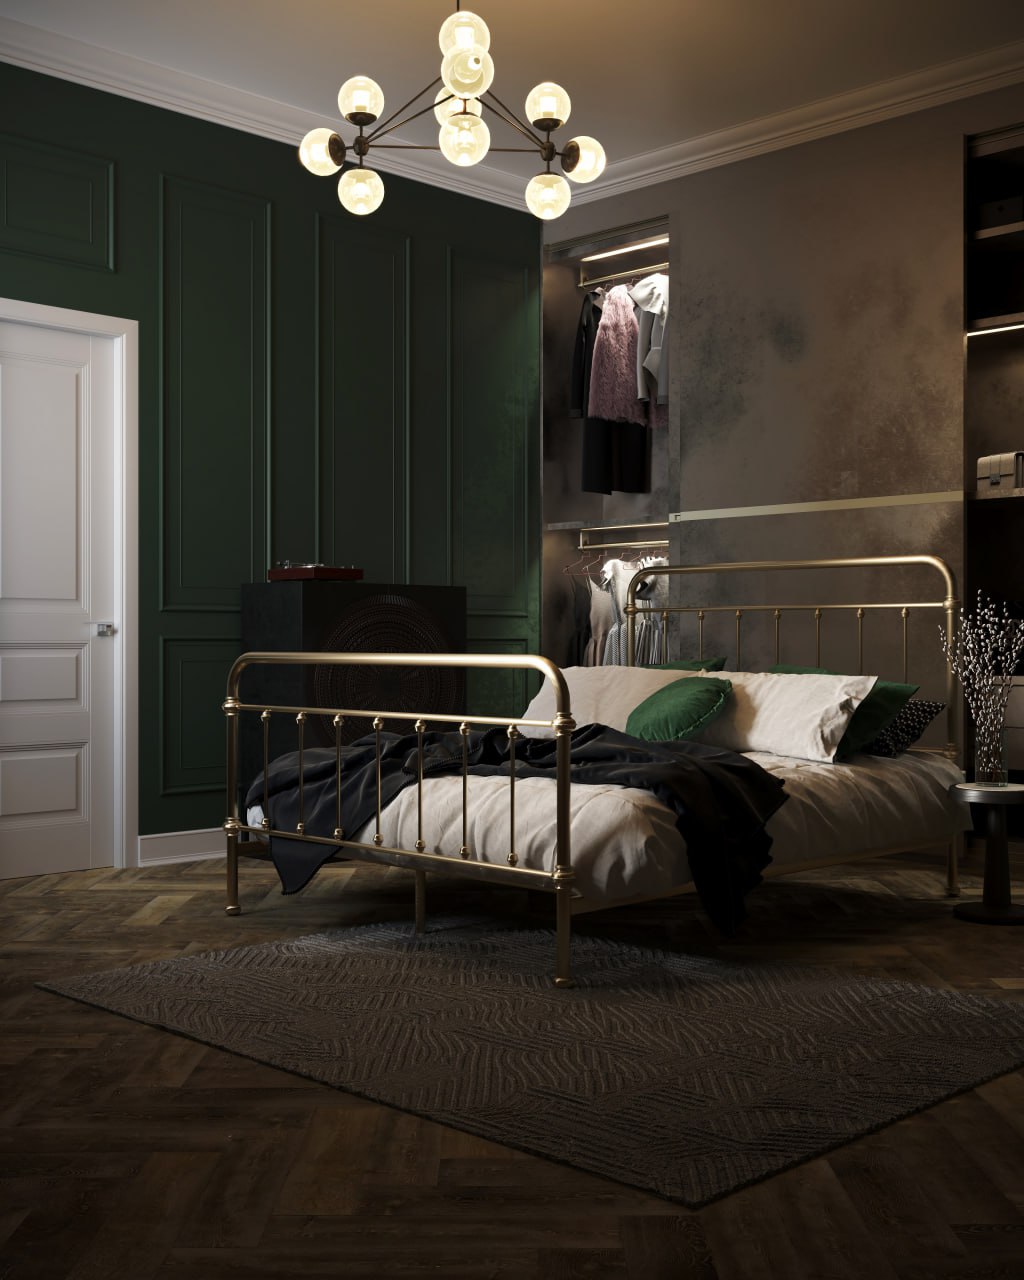 Сozy bedroom 3D render